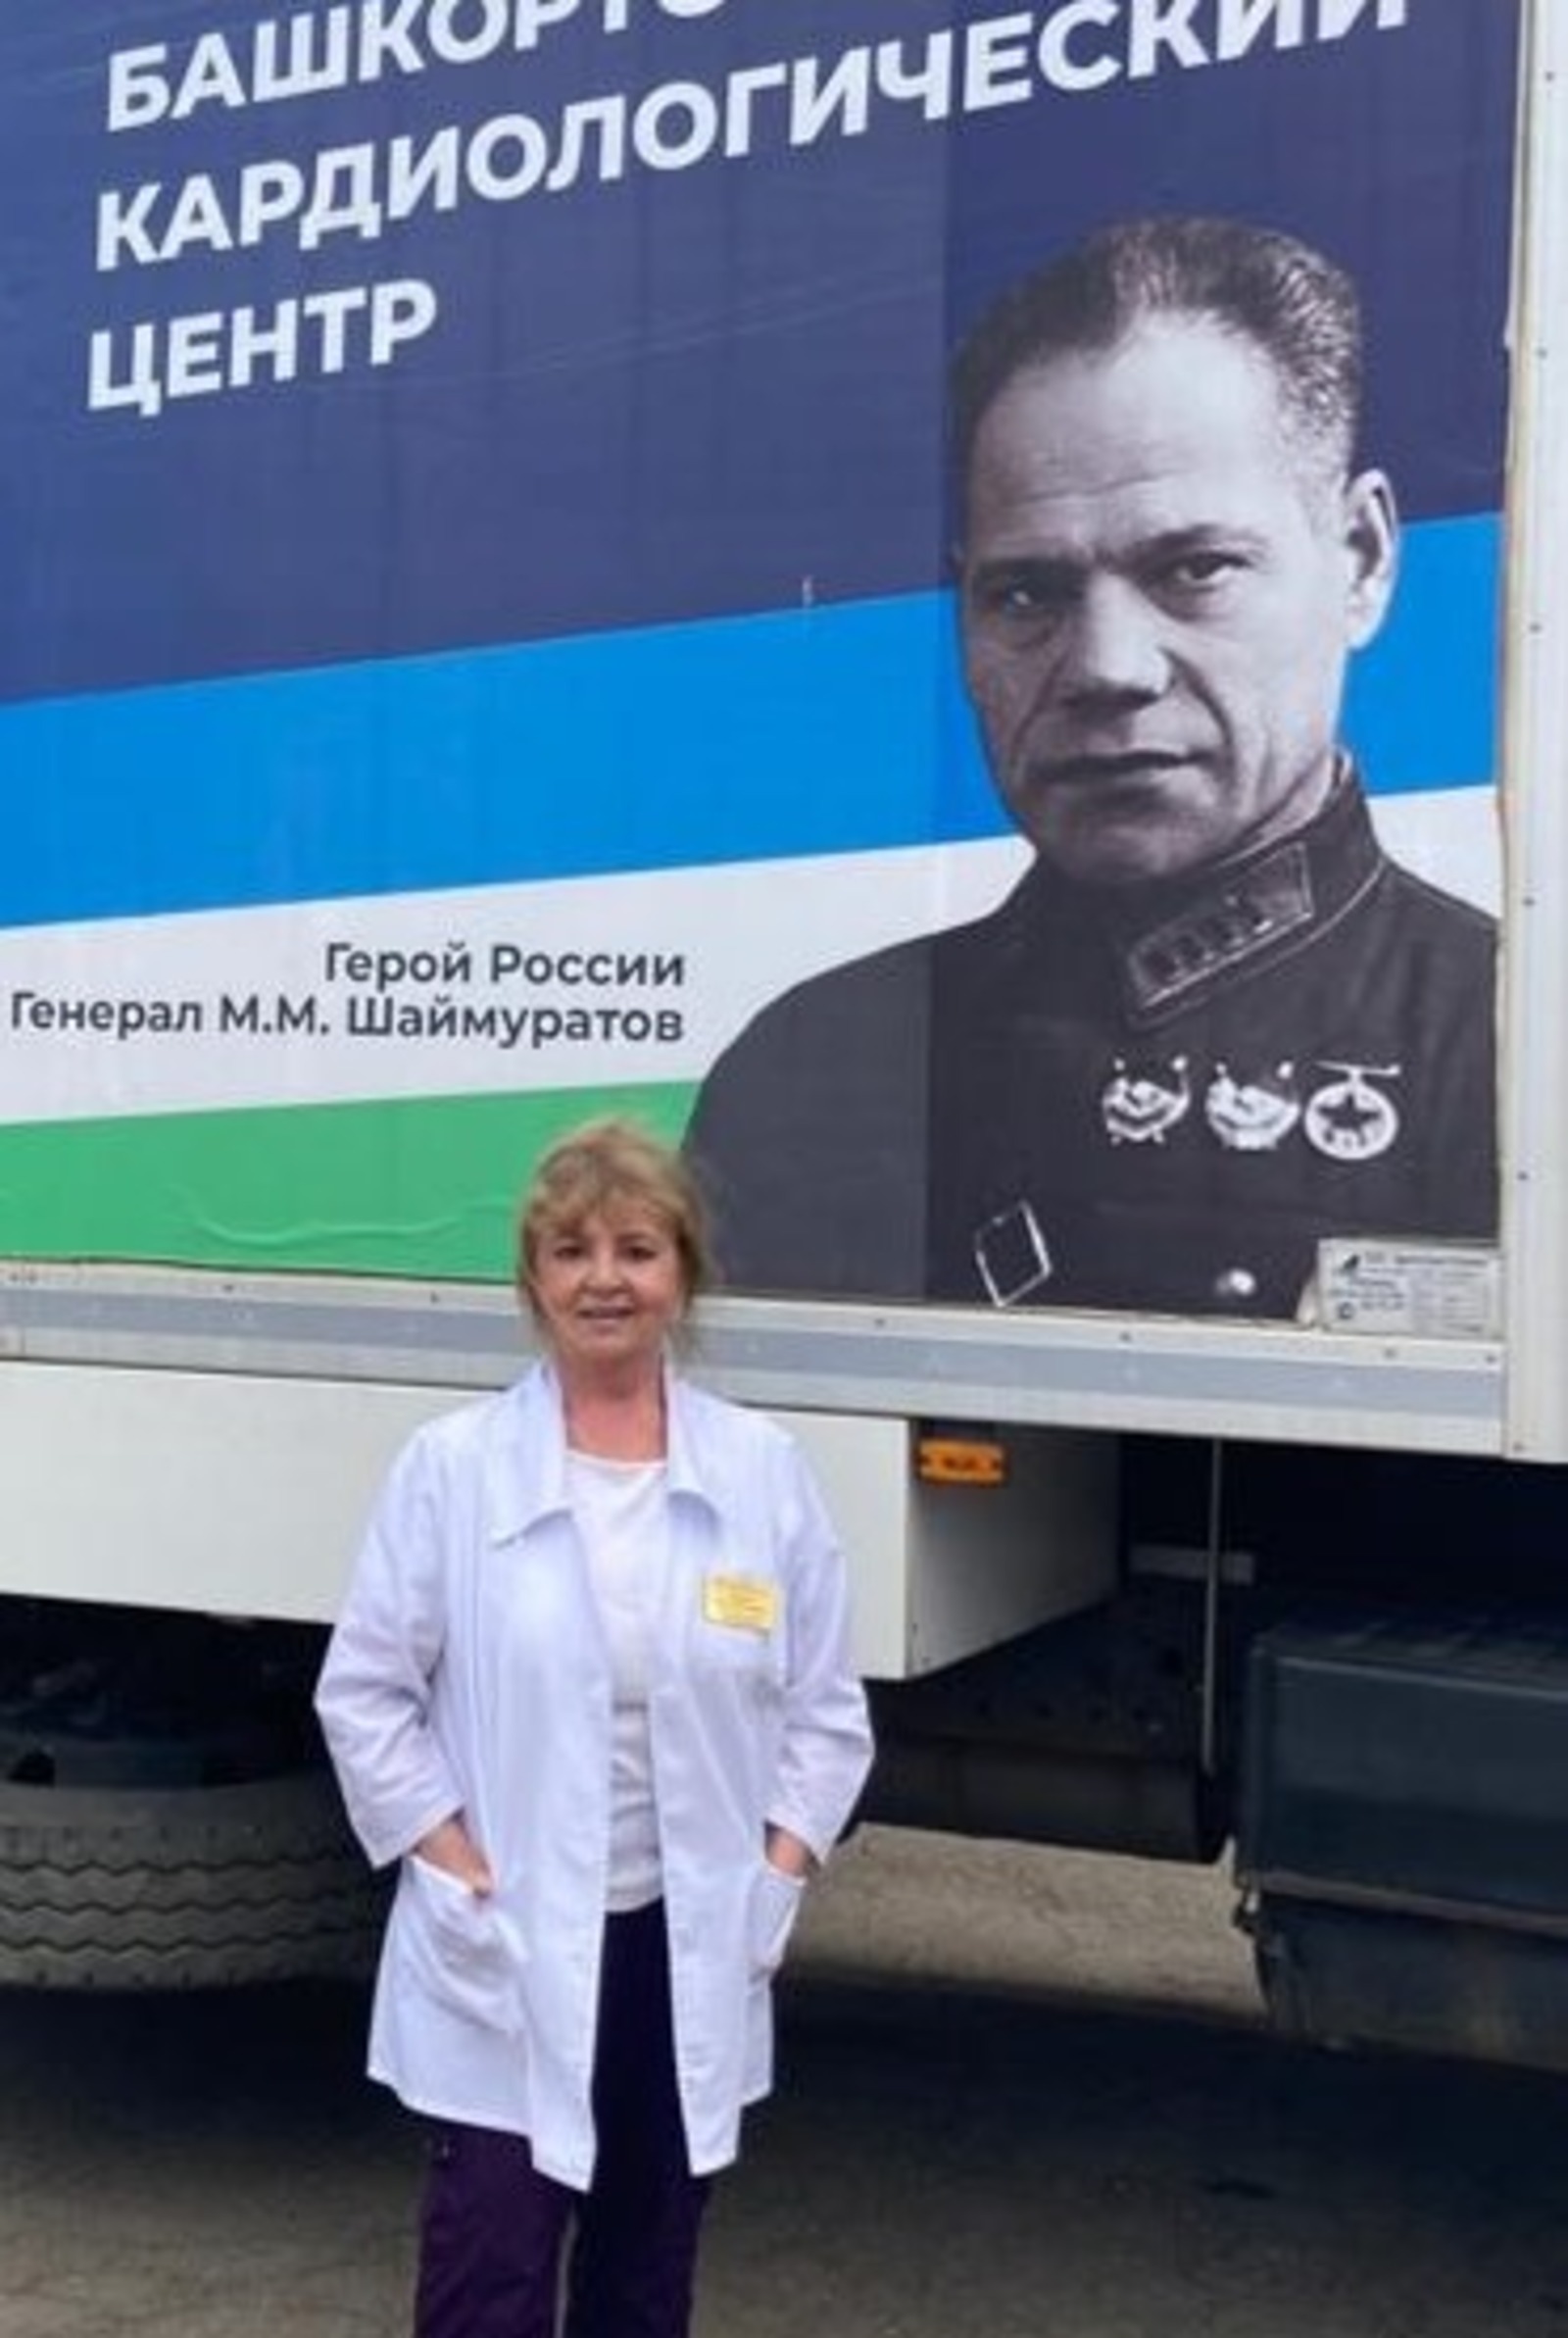 Врач-доброволец из Башкирии поделилась впечатлениями о работе на Донбассе